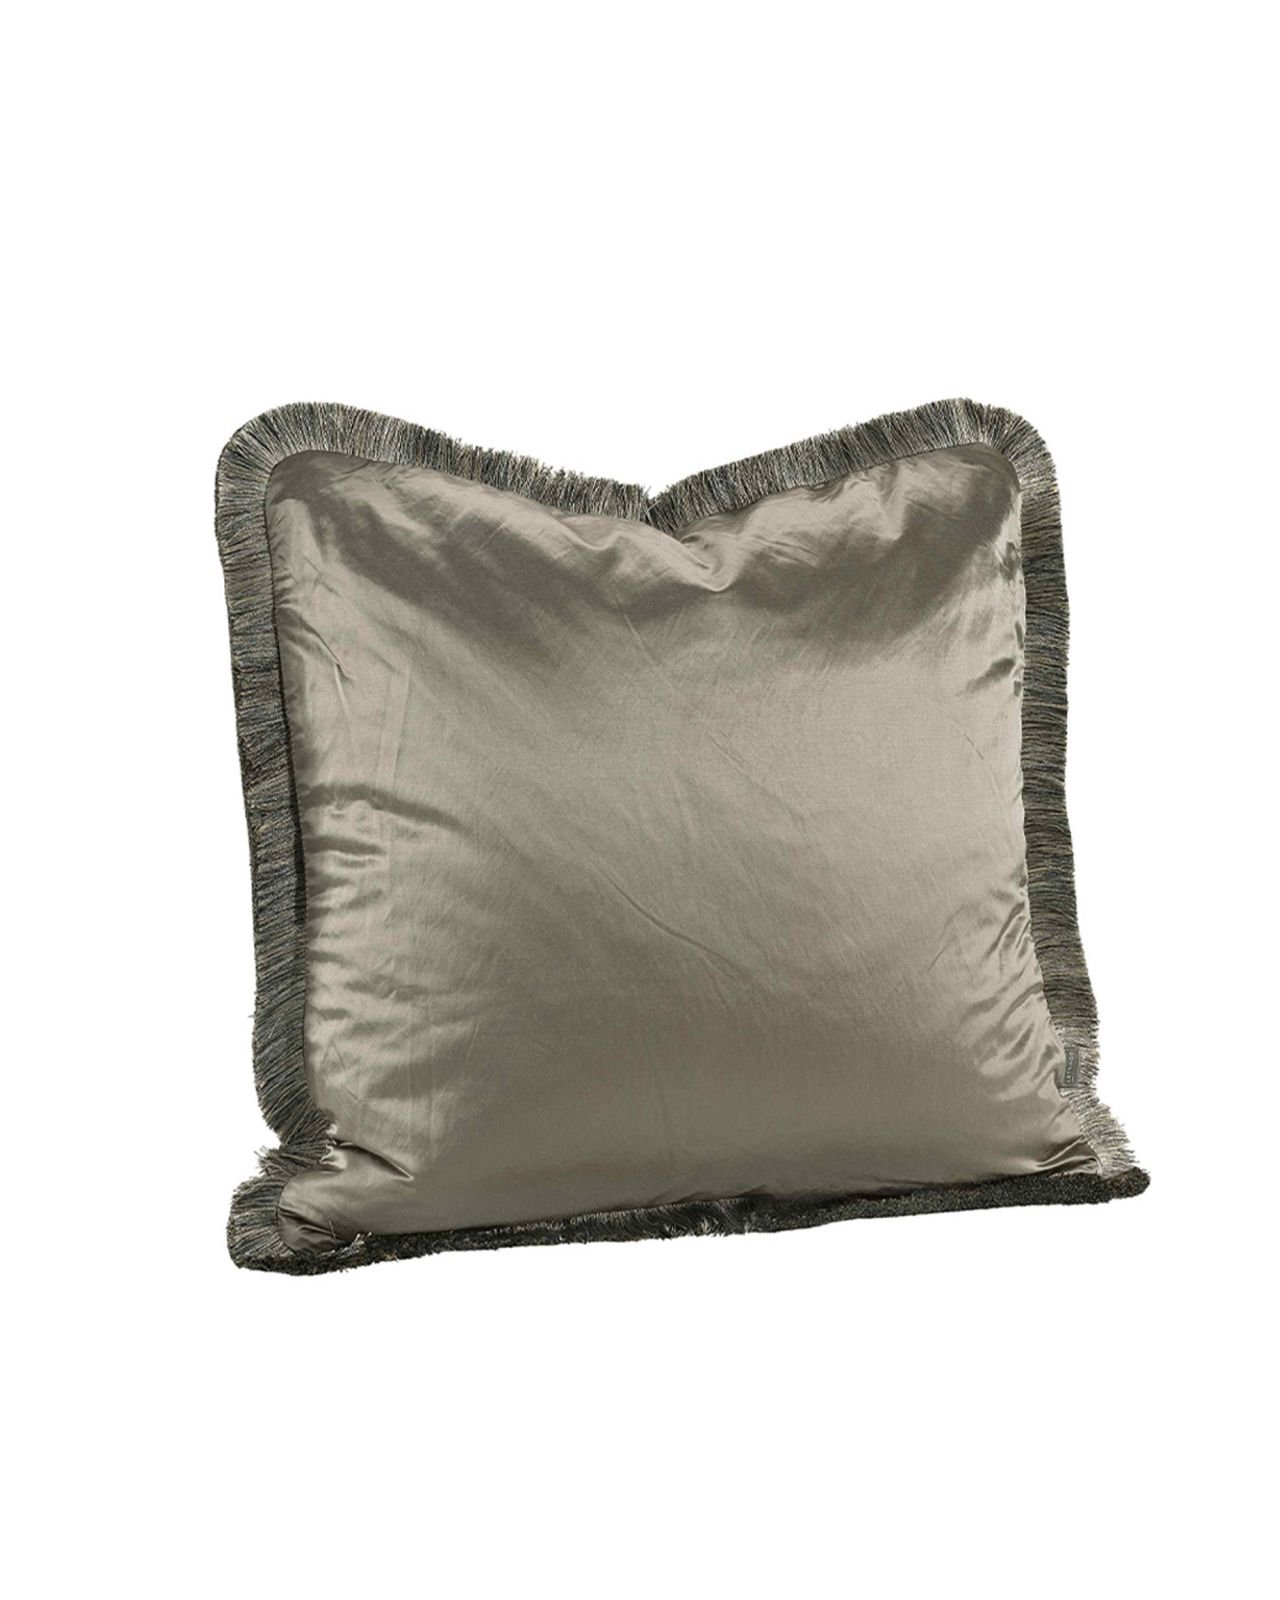 Dorsia cushion cover fringe taupe